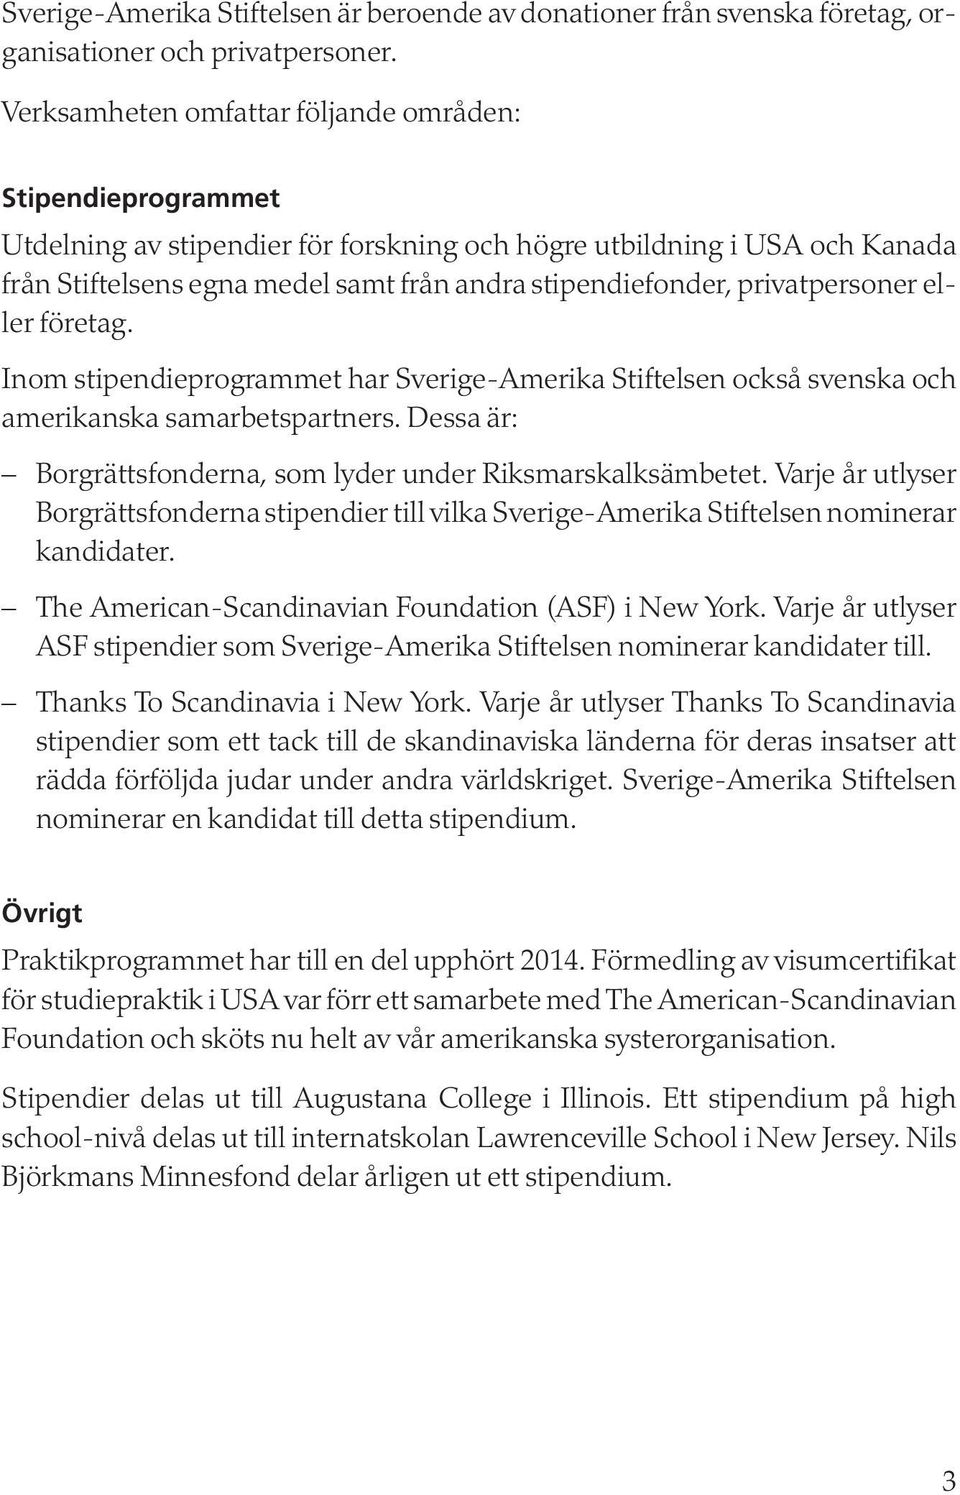 privatpersoner eller företag. Inom stipendieprogrammet har Sverige-Amerika Stiftelsen också svenska och amerikanska samarbetspartners.